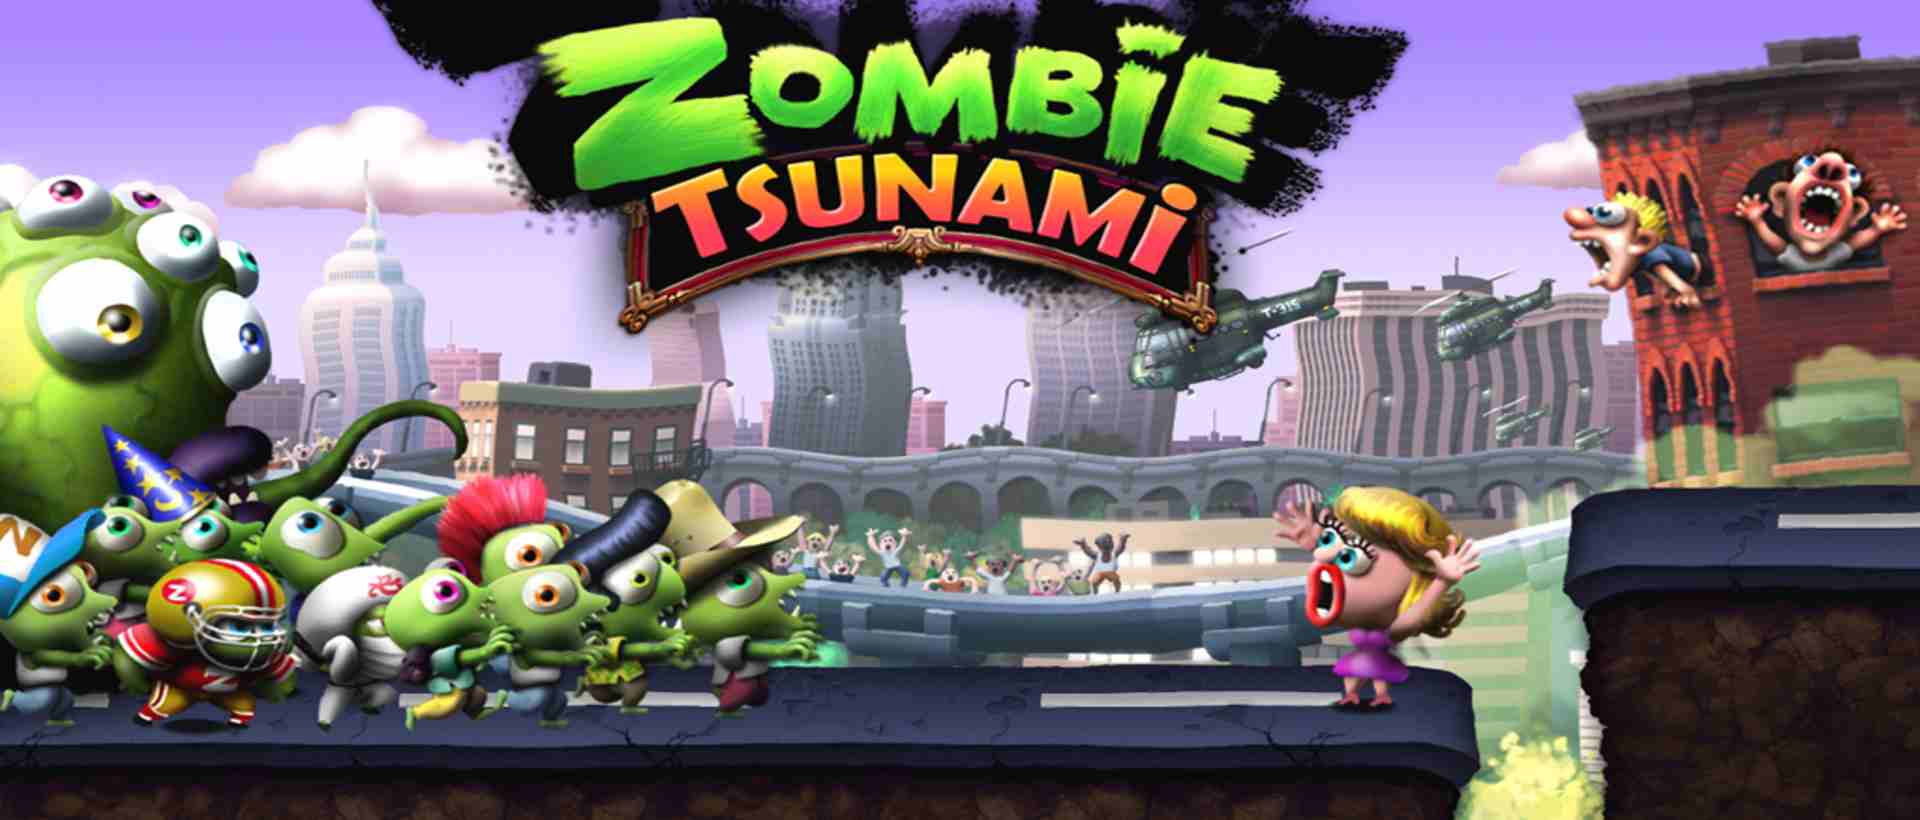 Zombie Tsunami MOD (Menu Pro, Tiền Full, Có Tất Cả, Cấp Độ Tối Đa, Không Chết) APK 4.5.133